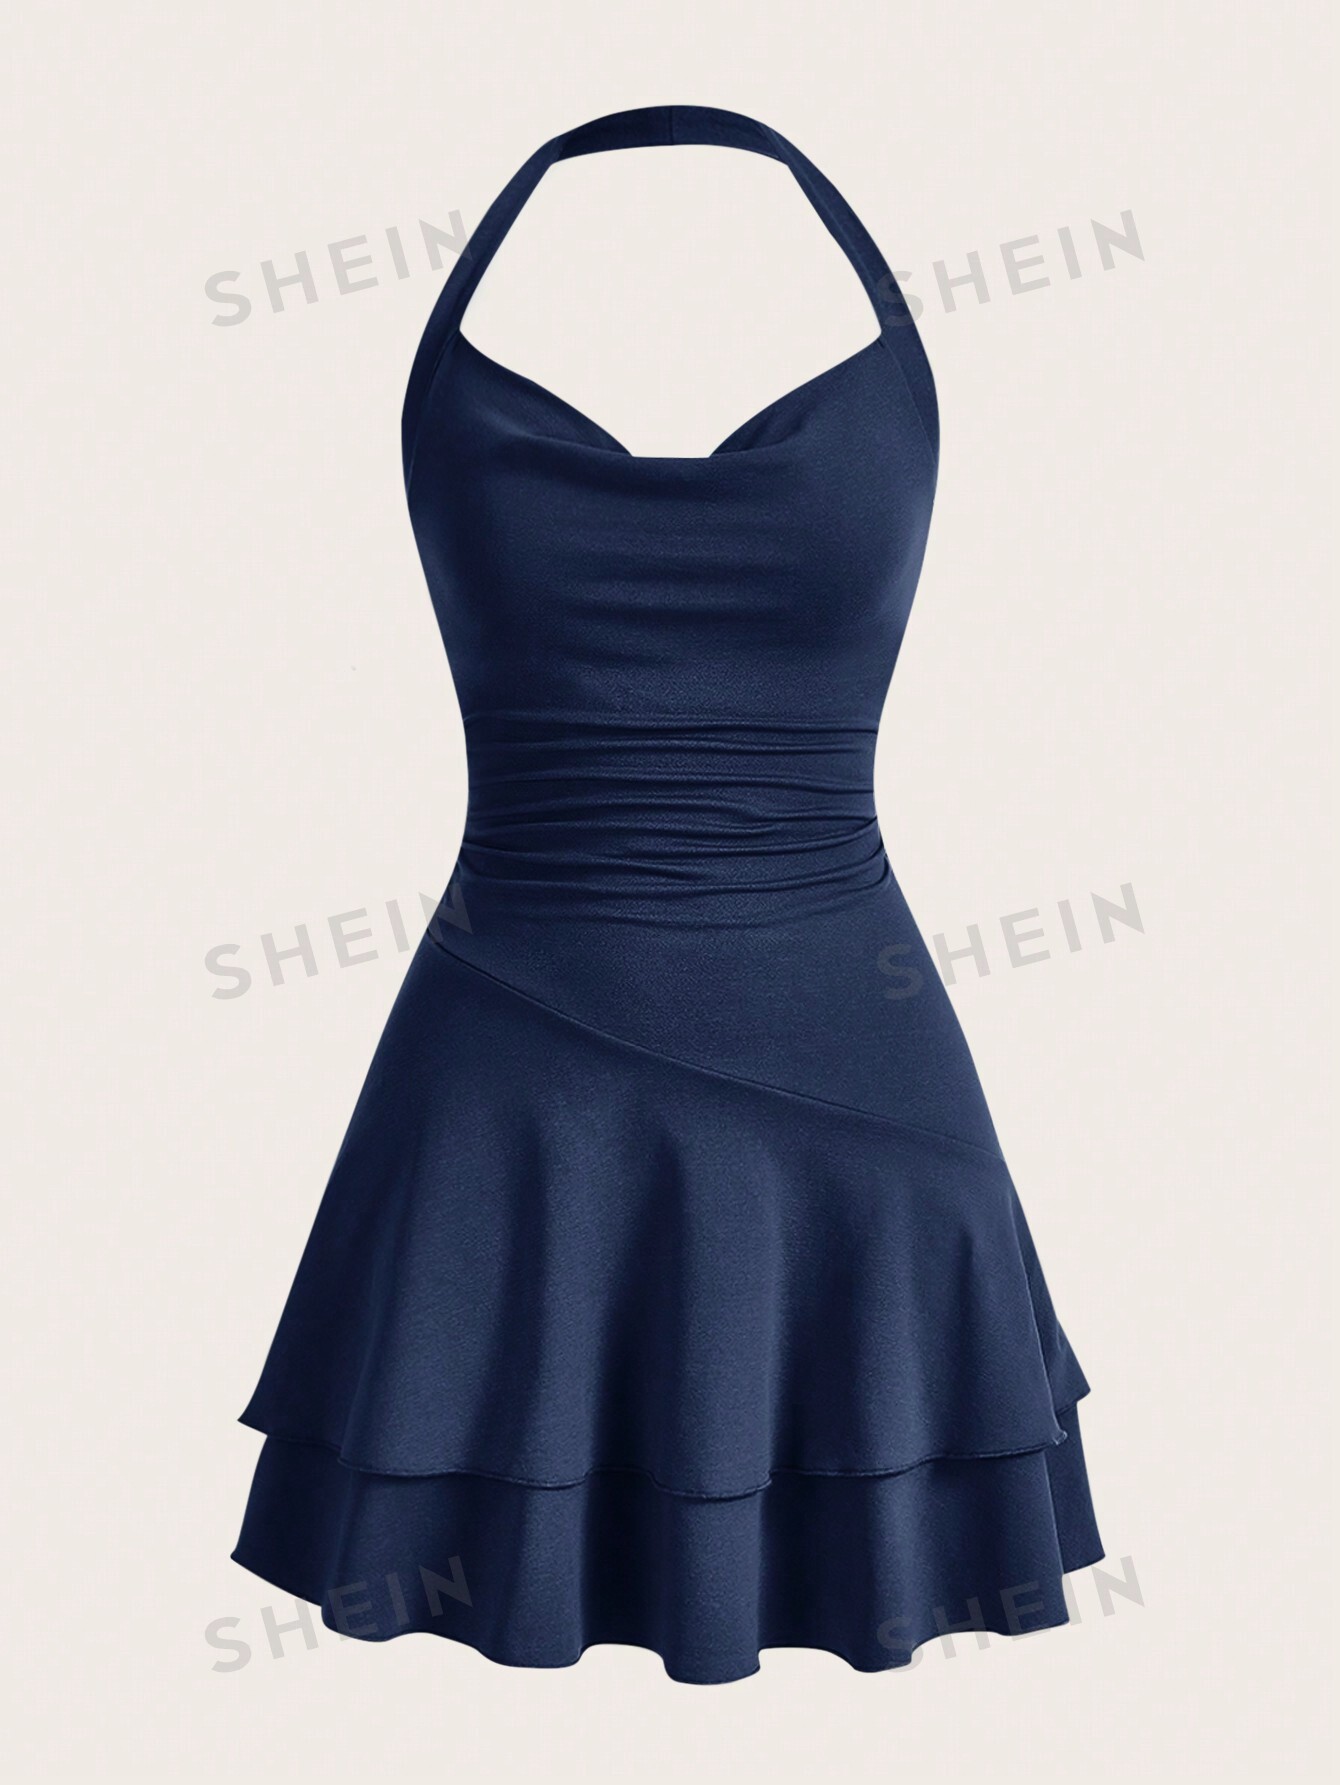 вязаное облегающее платье миди из хлопка цвет – бежевый SHEIN MOD однотонное женское платье с бретелькой на шее и многослойным подолом, темно-синий